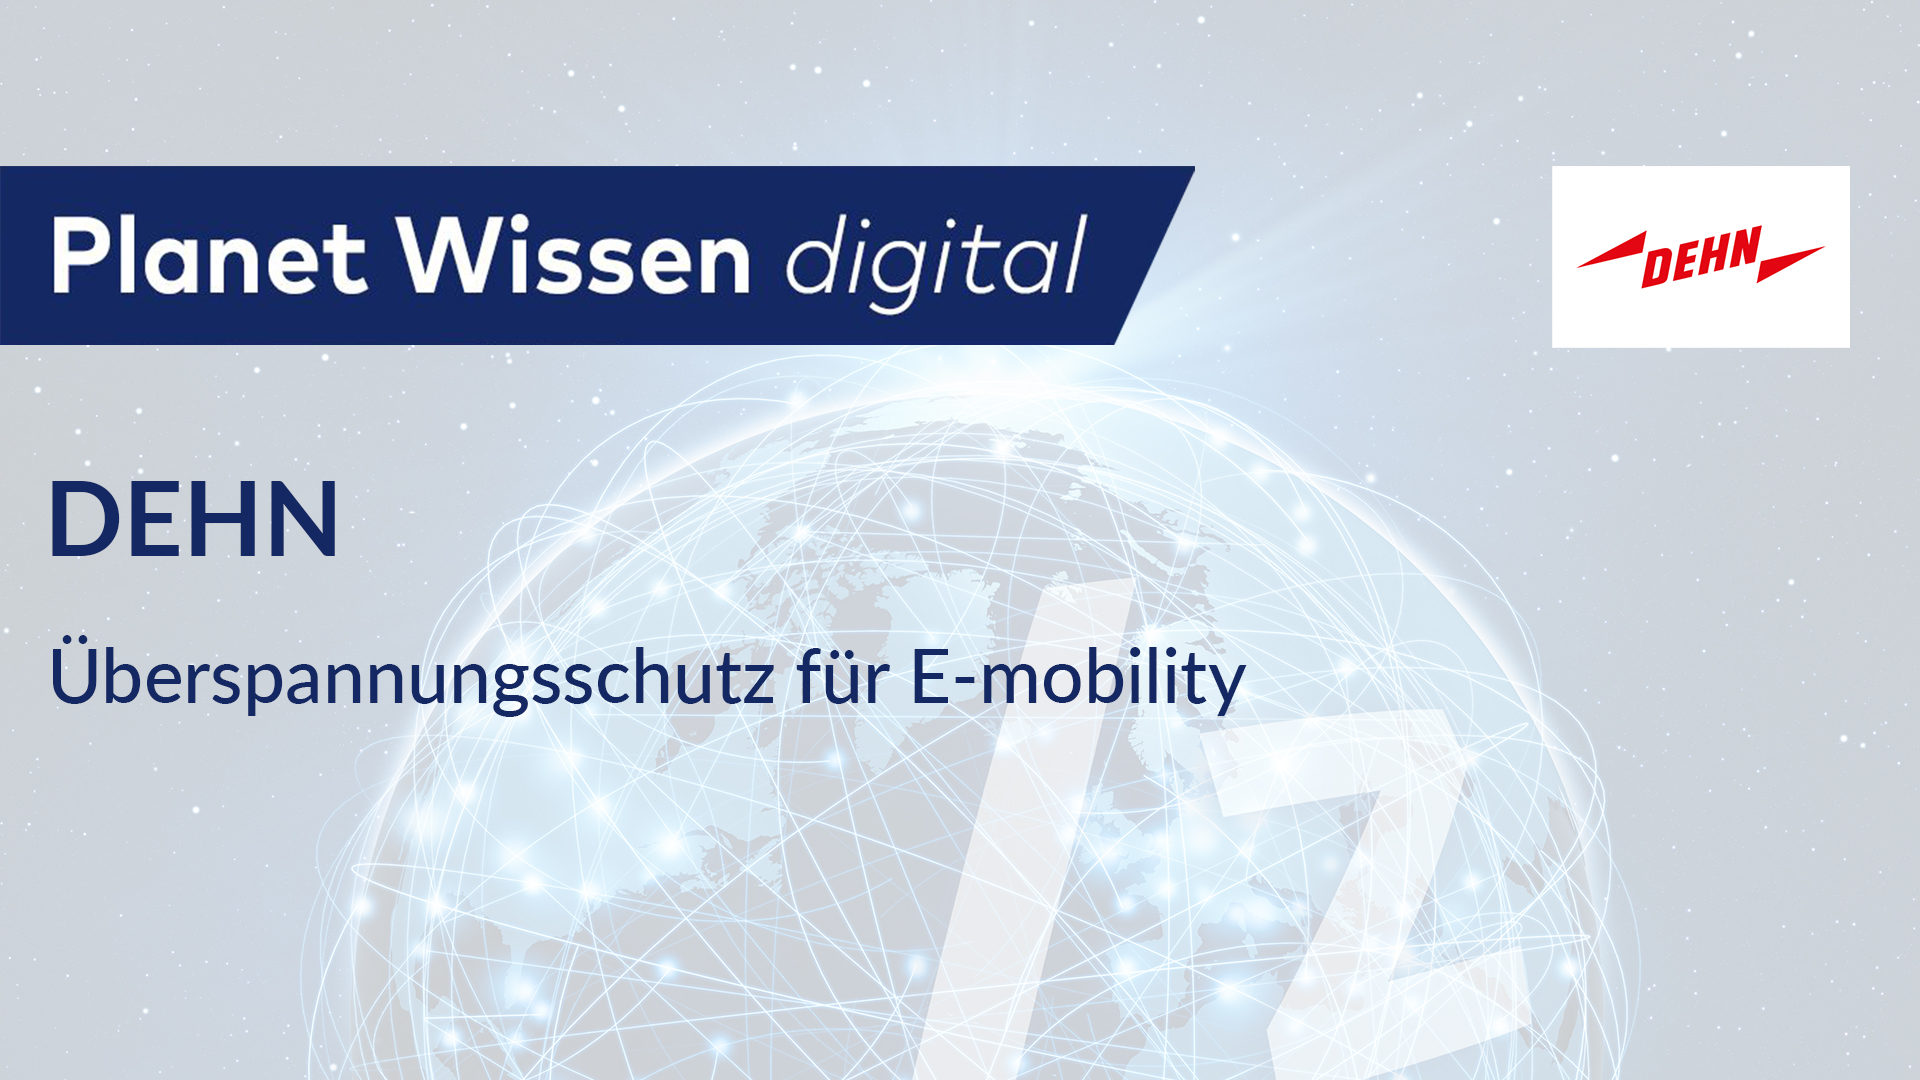 DEHN – Überspannungsschutz für E-mobility